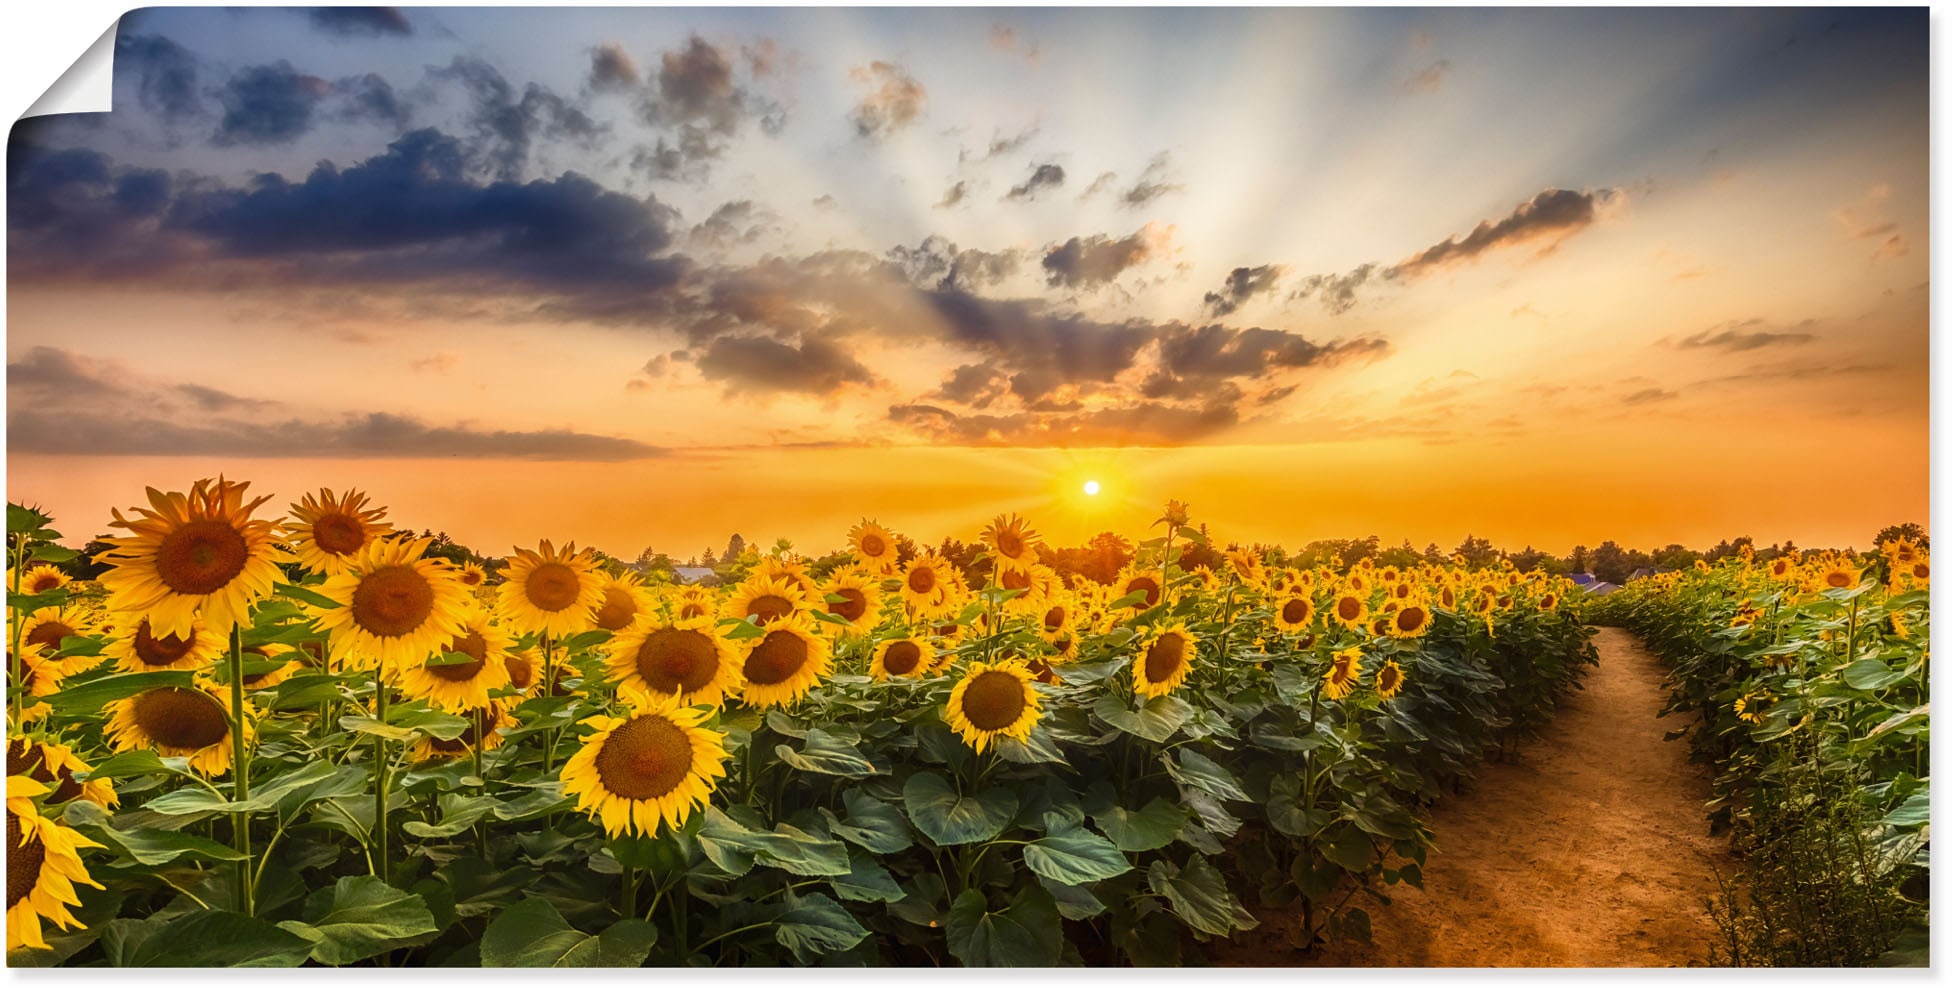 Artland Wandbild »Sonnenblumenfeld bei Sonnenuntergang«, Blumenbilder, (1 St.), als Alubild, Outdoorbild, Leinwandbild, Poster in verschied. Größen